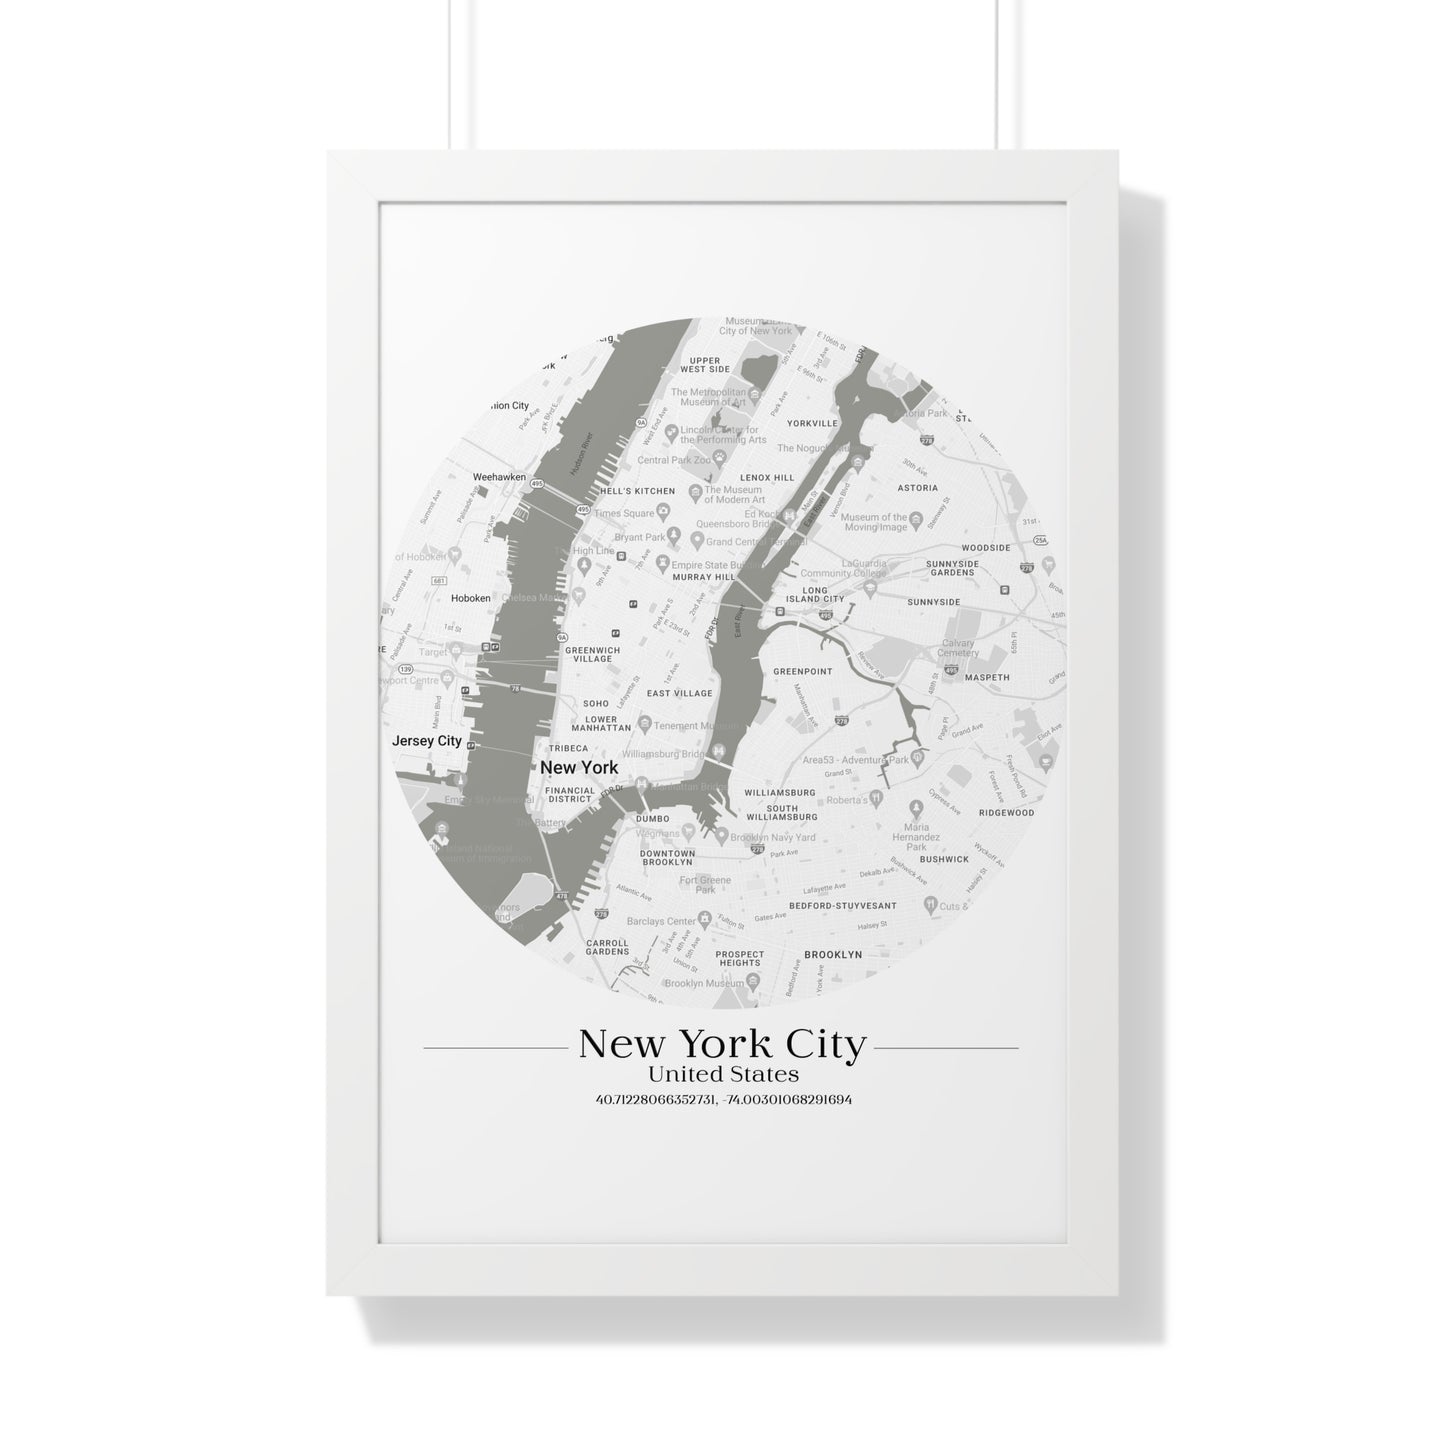 New York City - Framed Vertical Poster